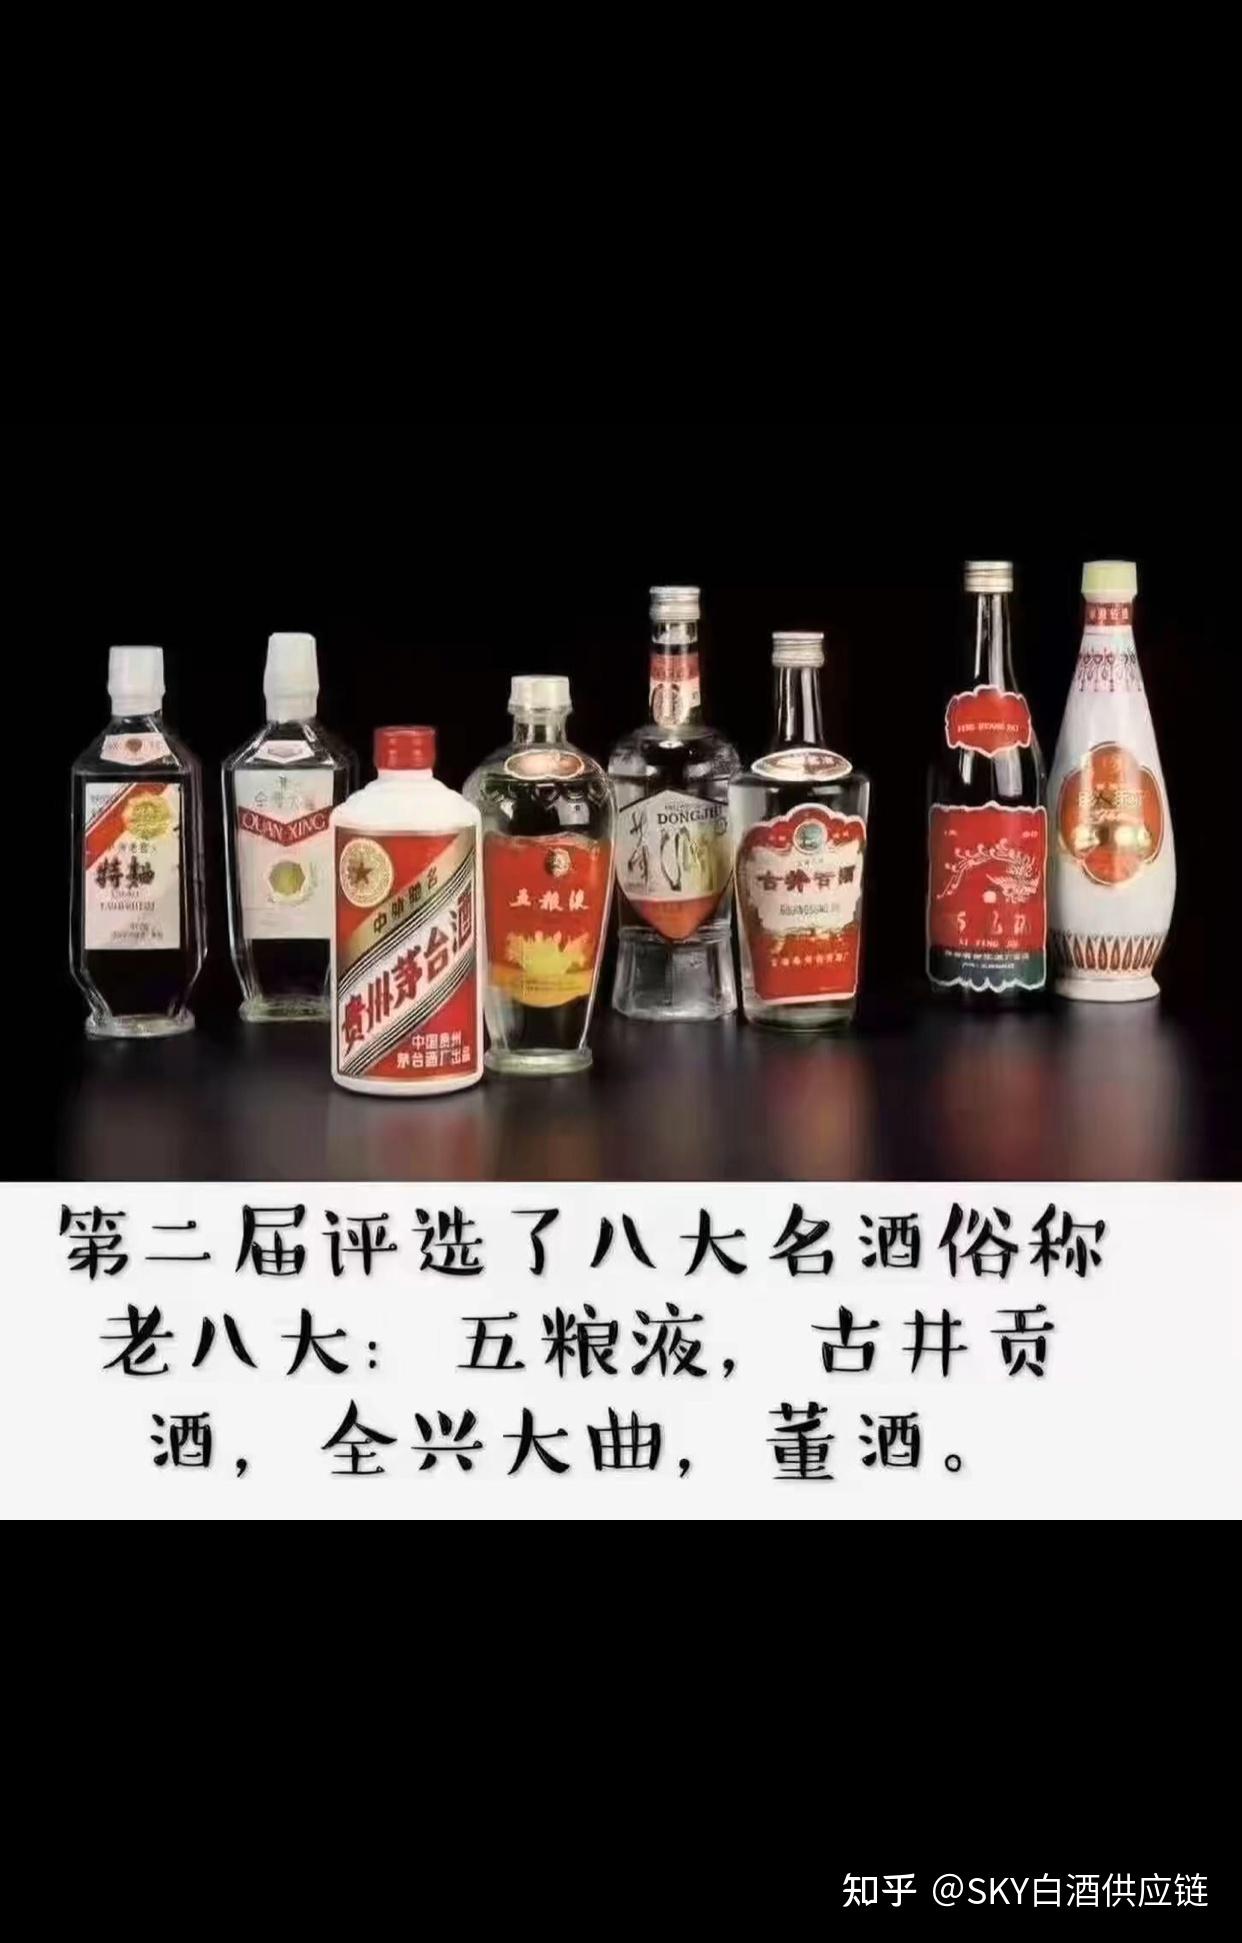 中国四大名酒老八大名酒新八大名酒十三大名酒和十七大名酒